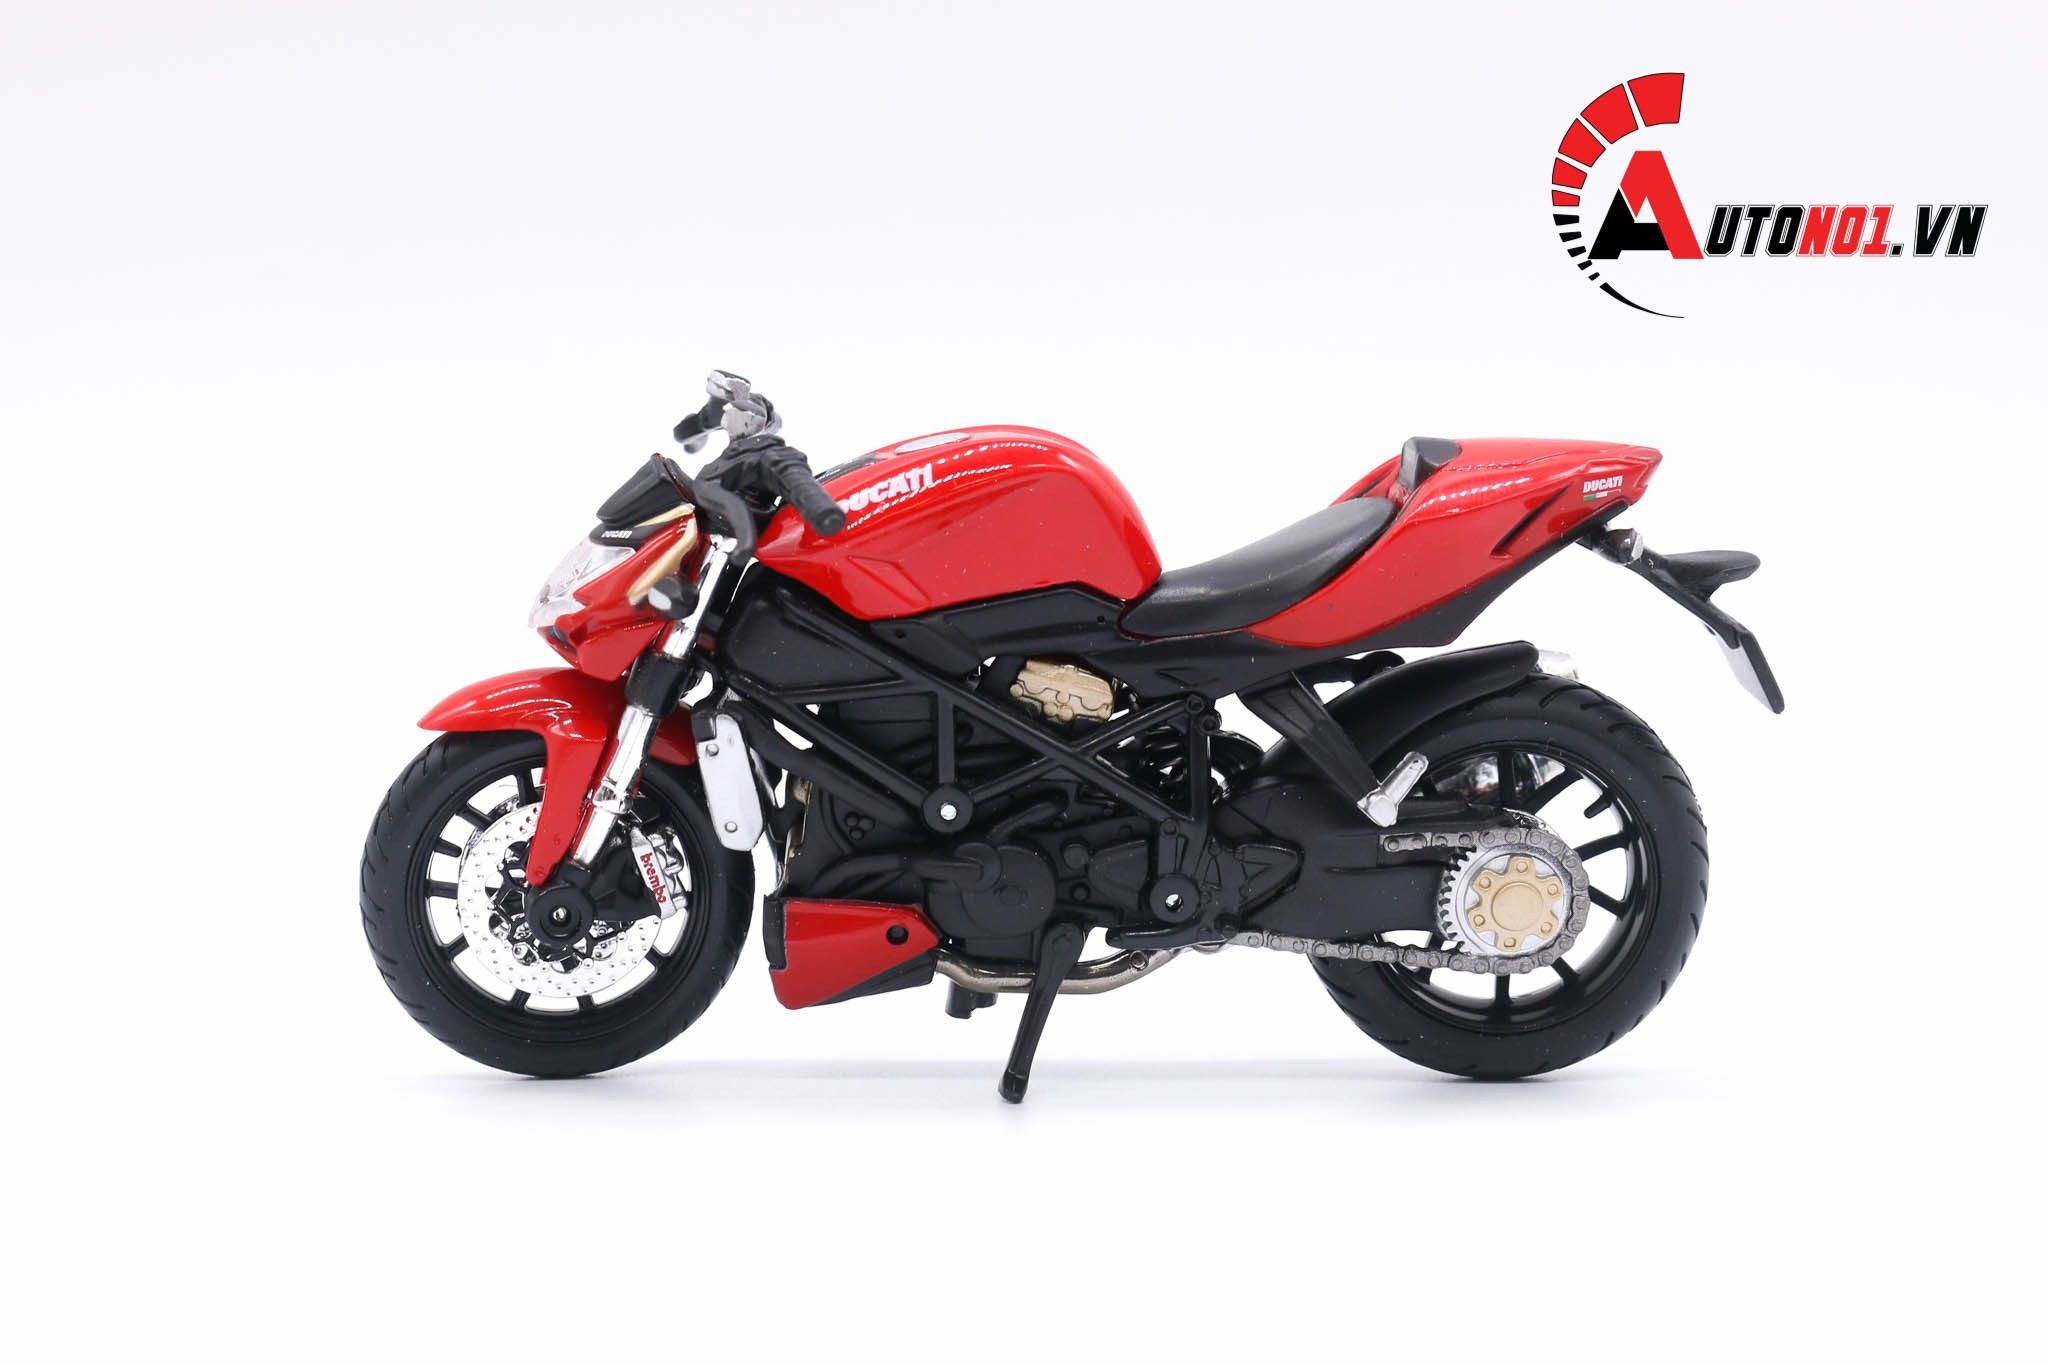  Mô hình xe mô tô Ducati Streetfighter s red 1:18 Maisto 5812 